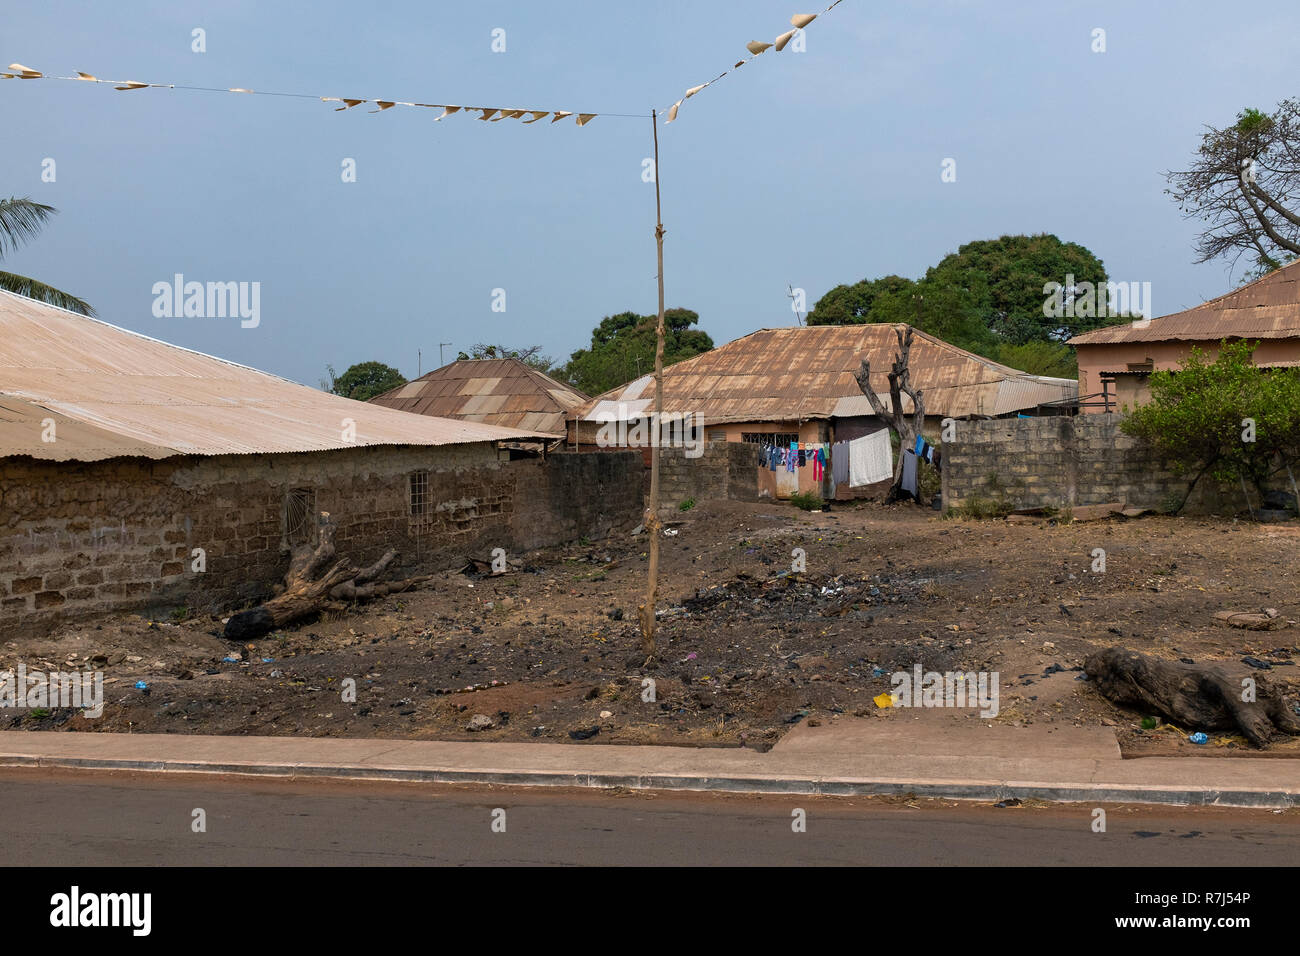 Häuser in der Bandim Nachbarschaft in der Stadt Bissau, Guinea-Bissau. Guinea-bissau ist eines der ärmsten Länder der Welt. Stockfoto